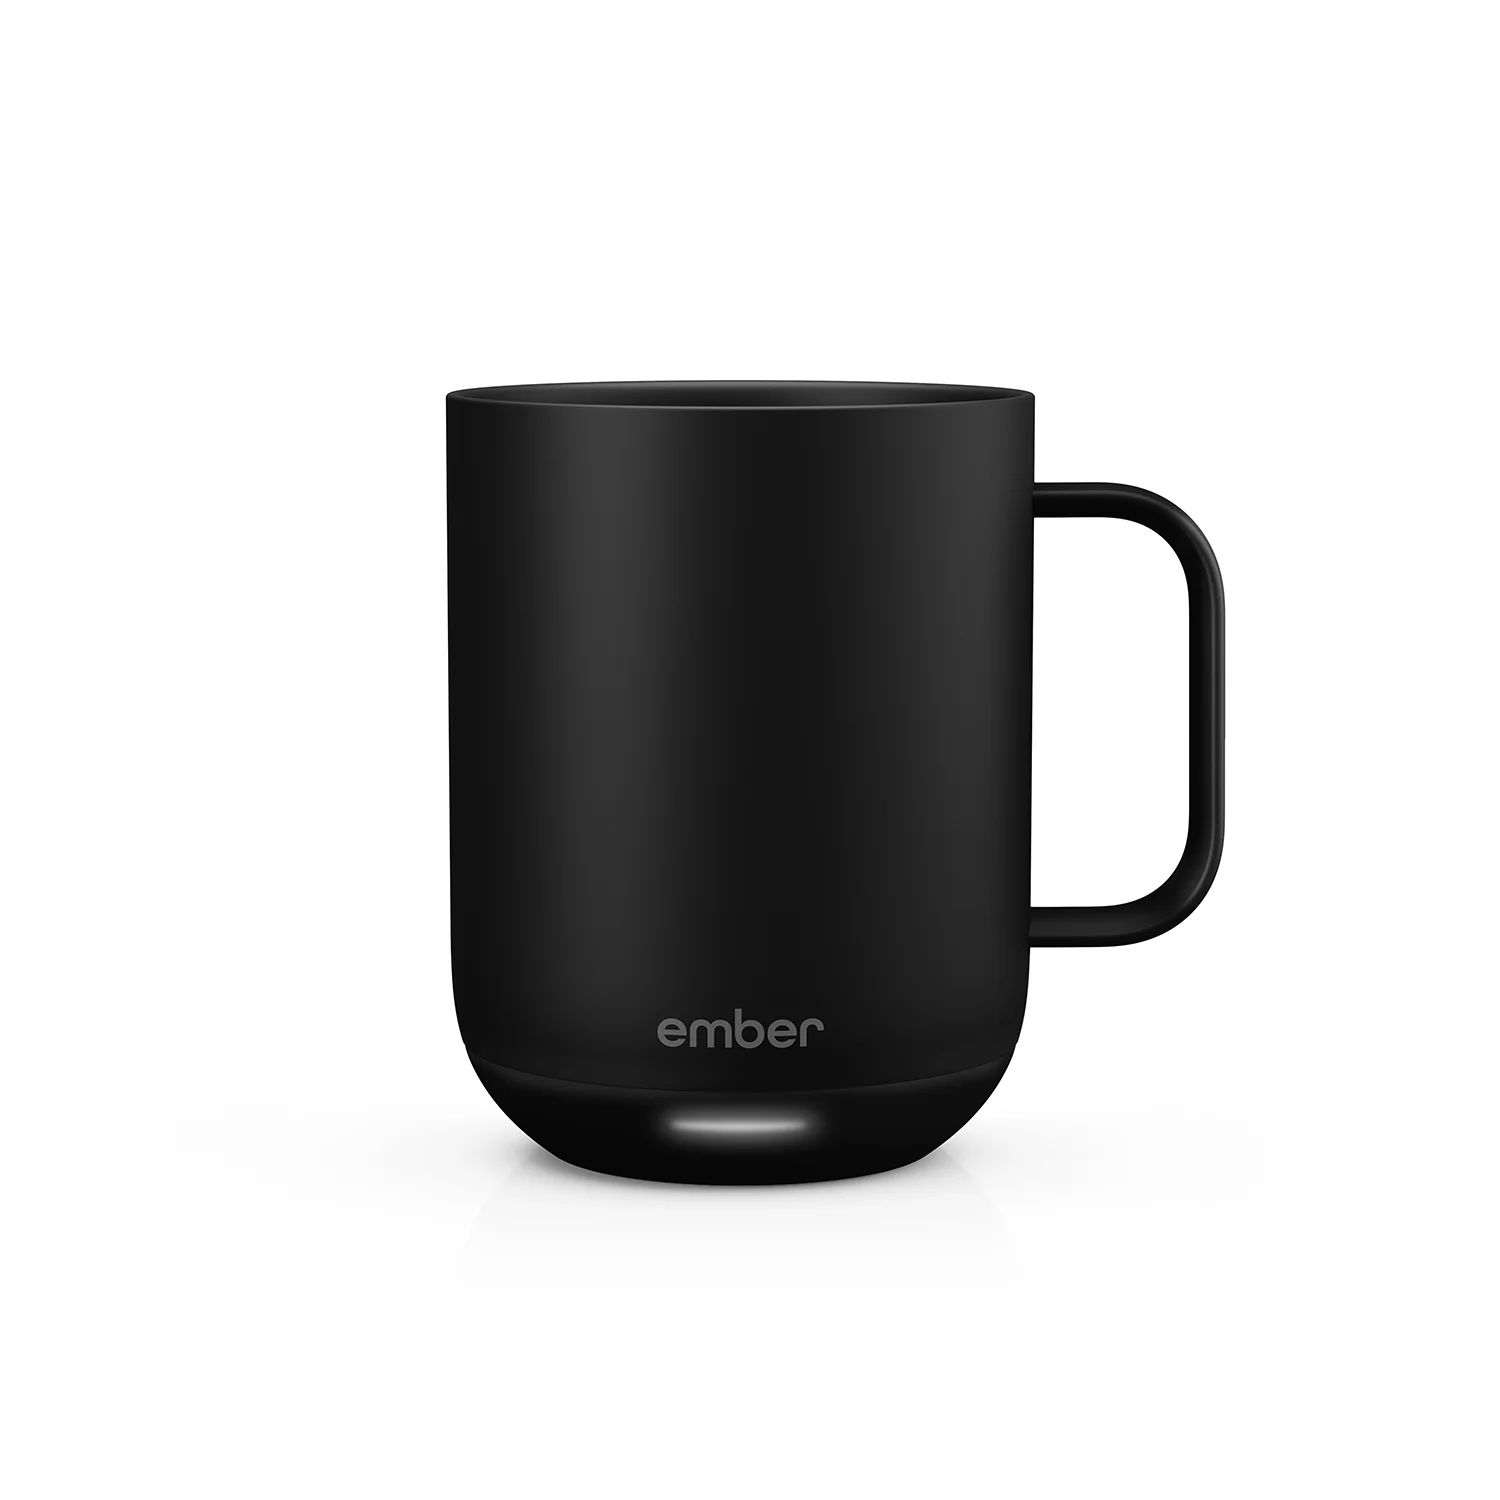 Ember Mug² | Edge of Ember Ltd